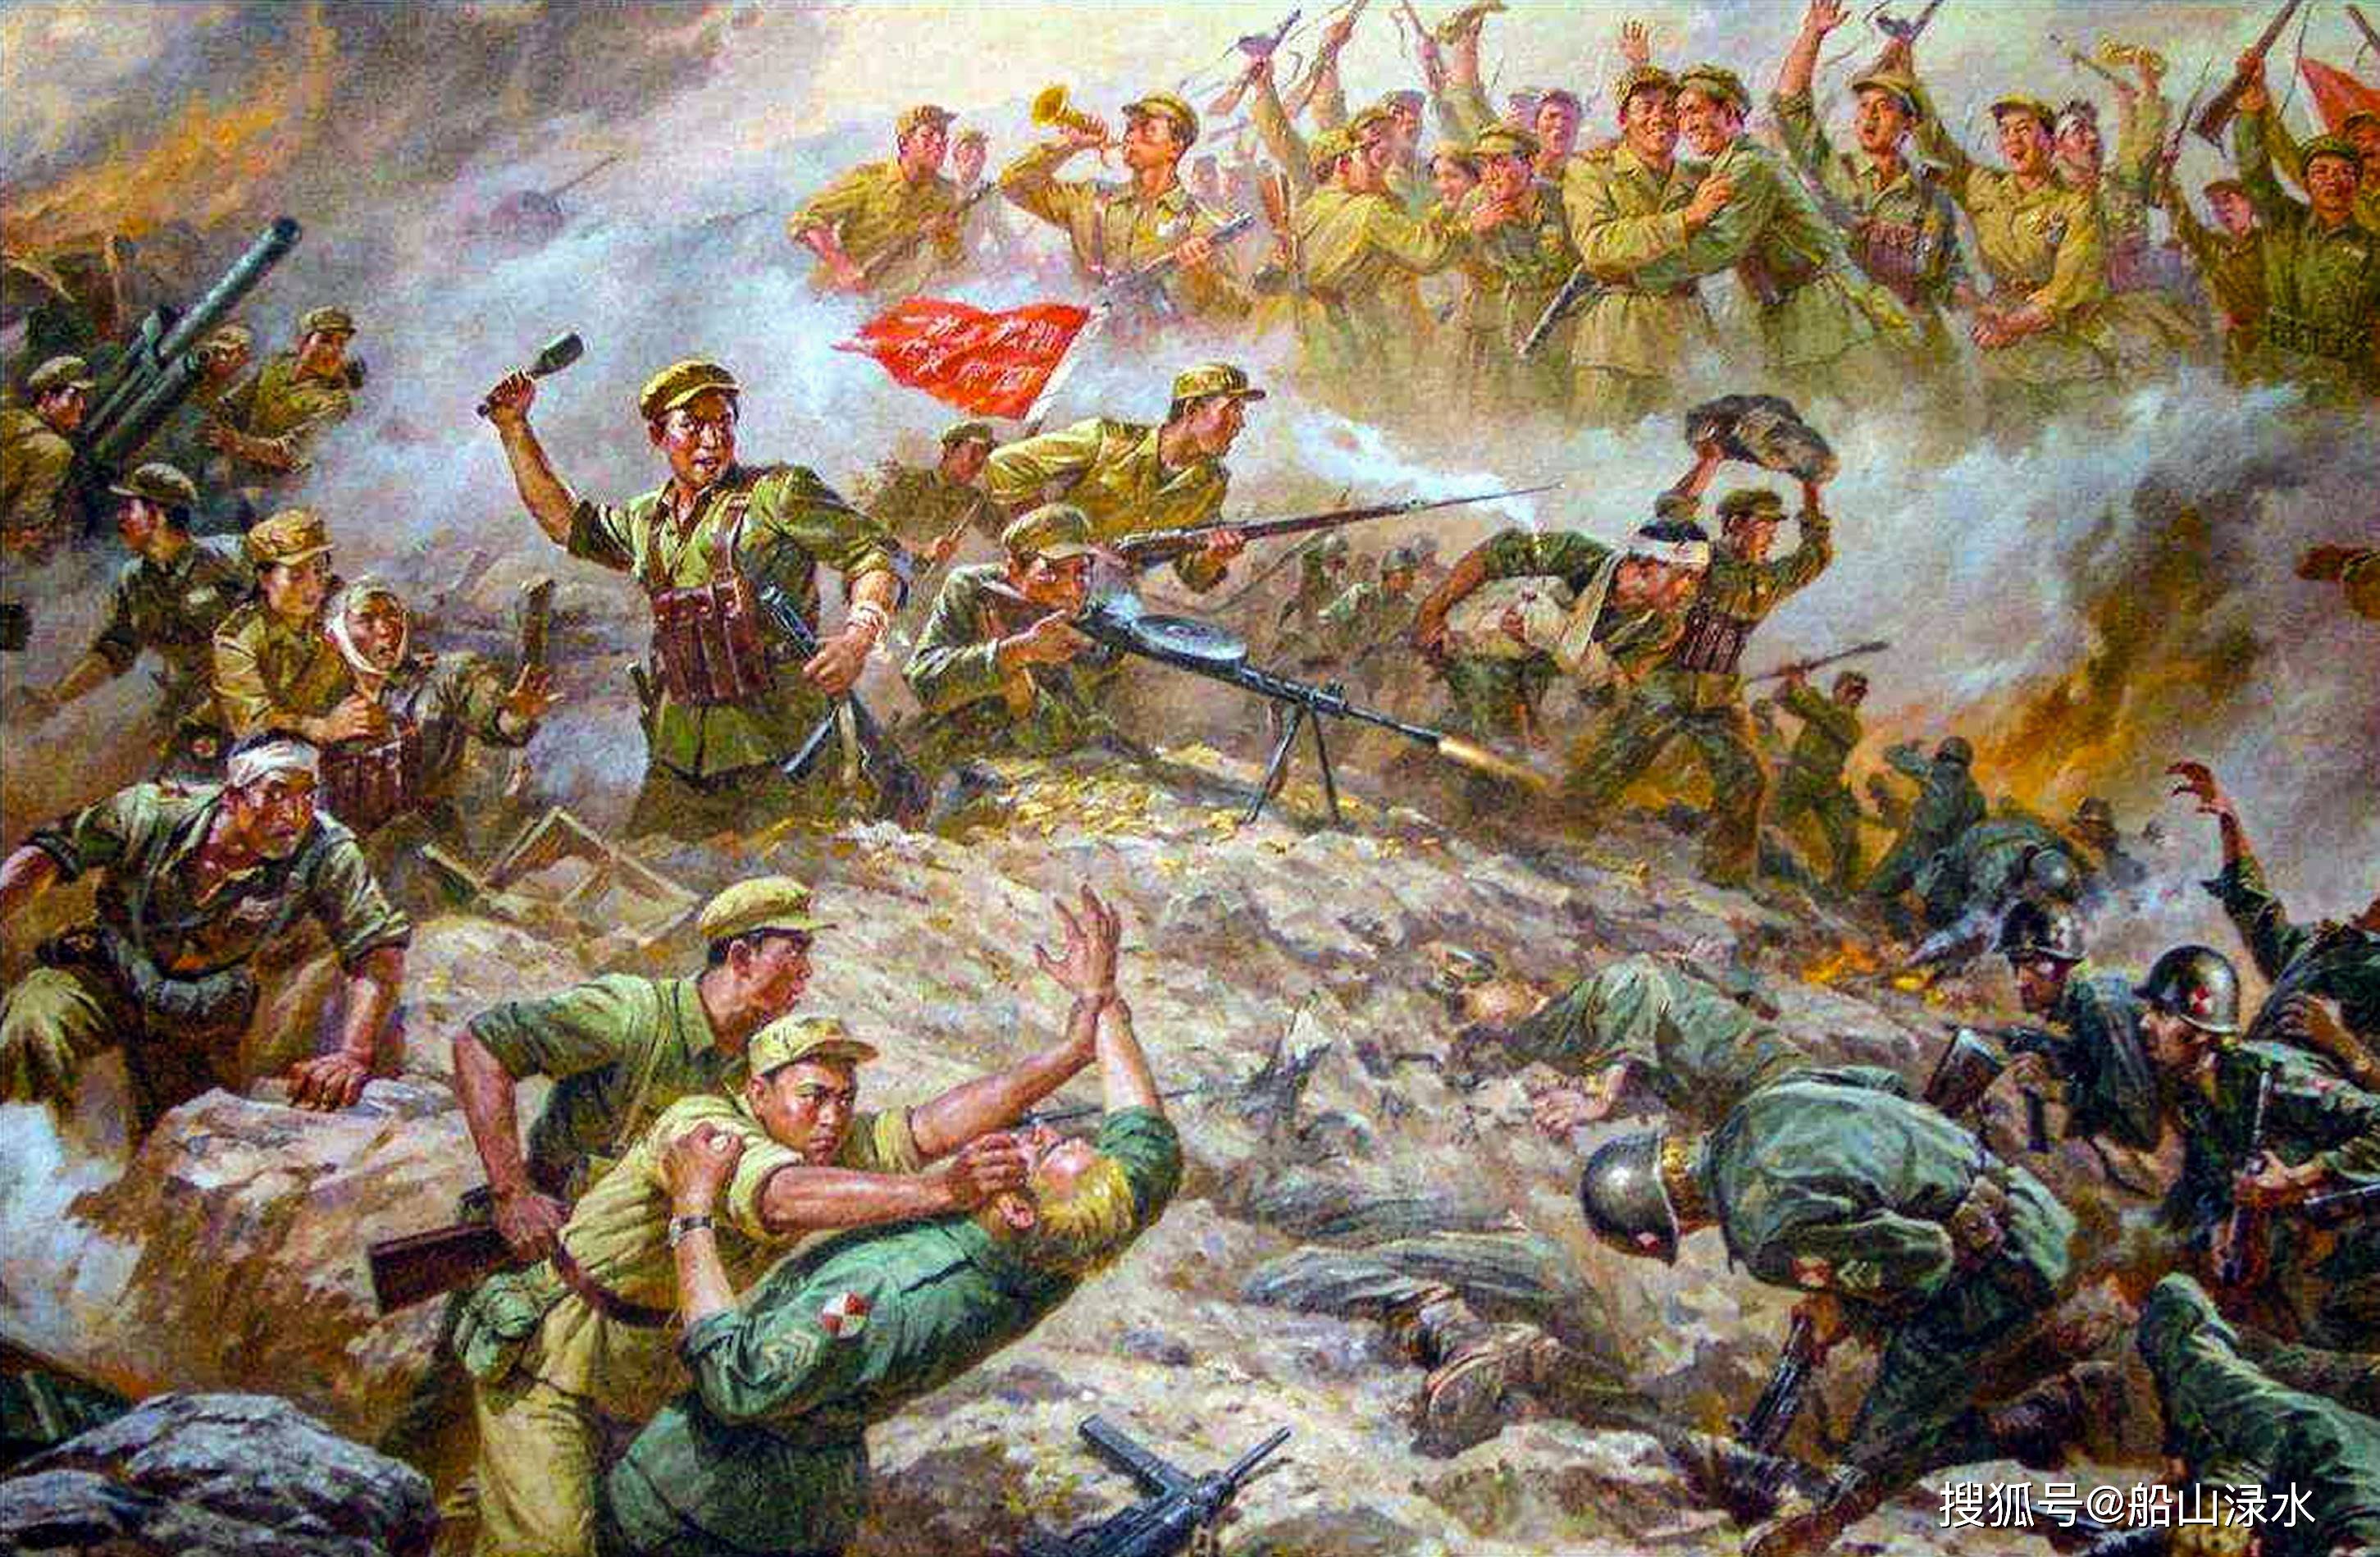 用我创作的文学作品去讴歌中国人民志愿军在伟大的抗美援朝战争中为保